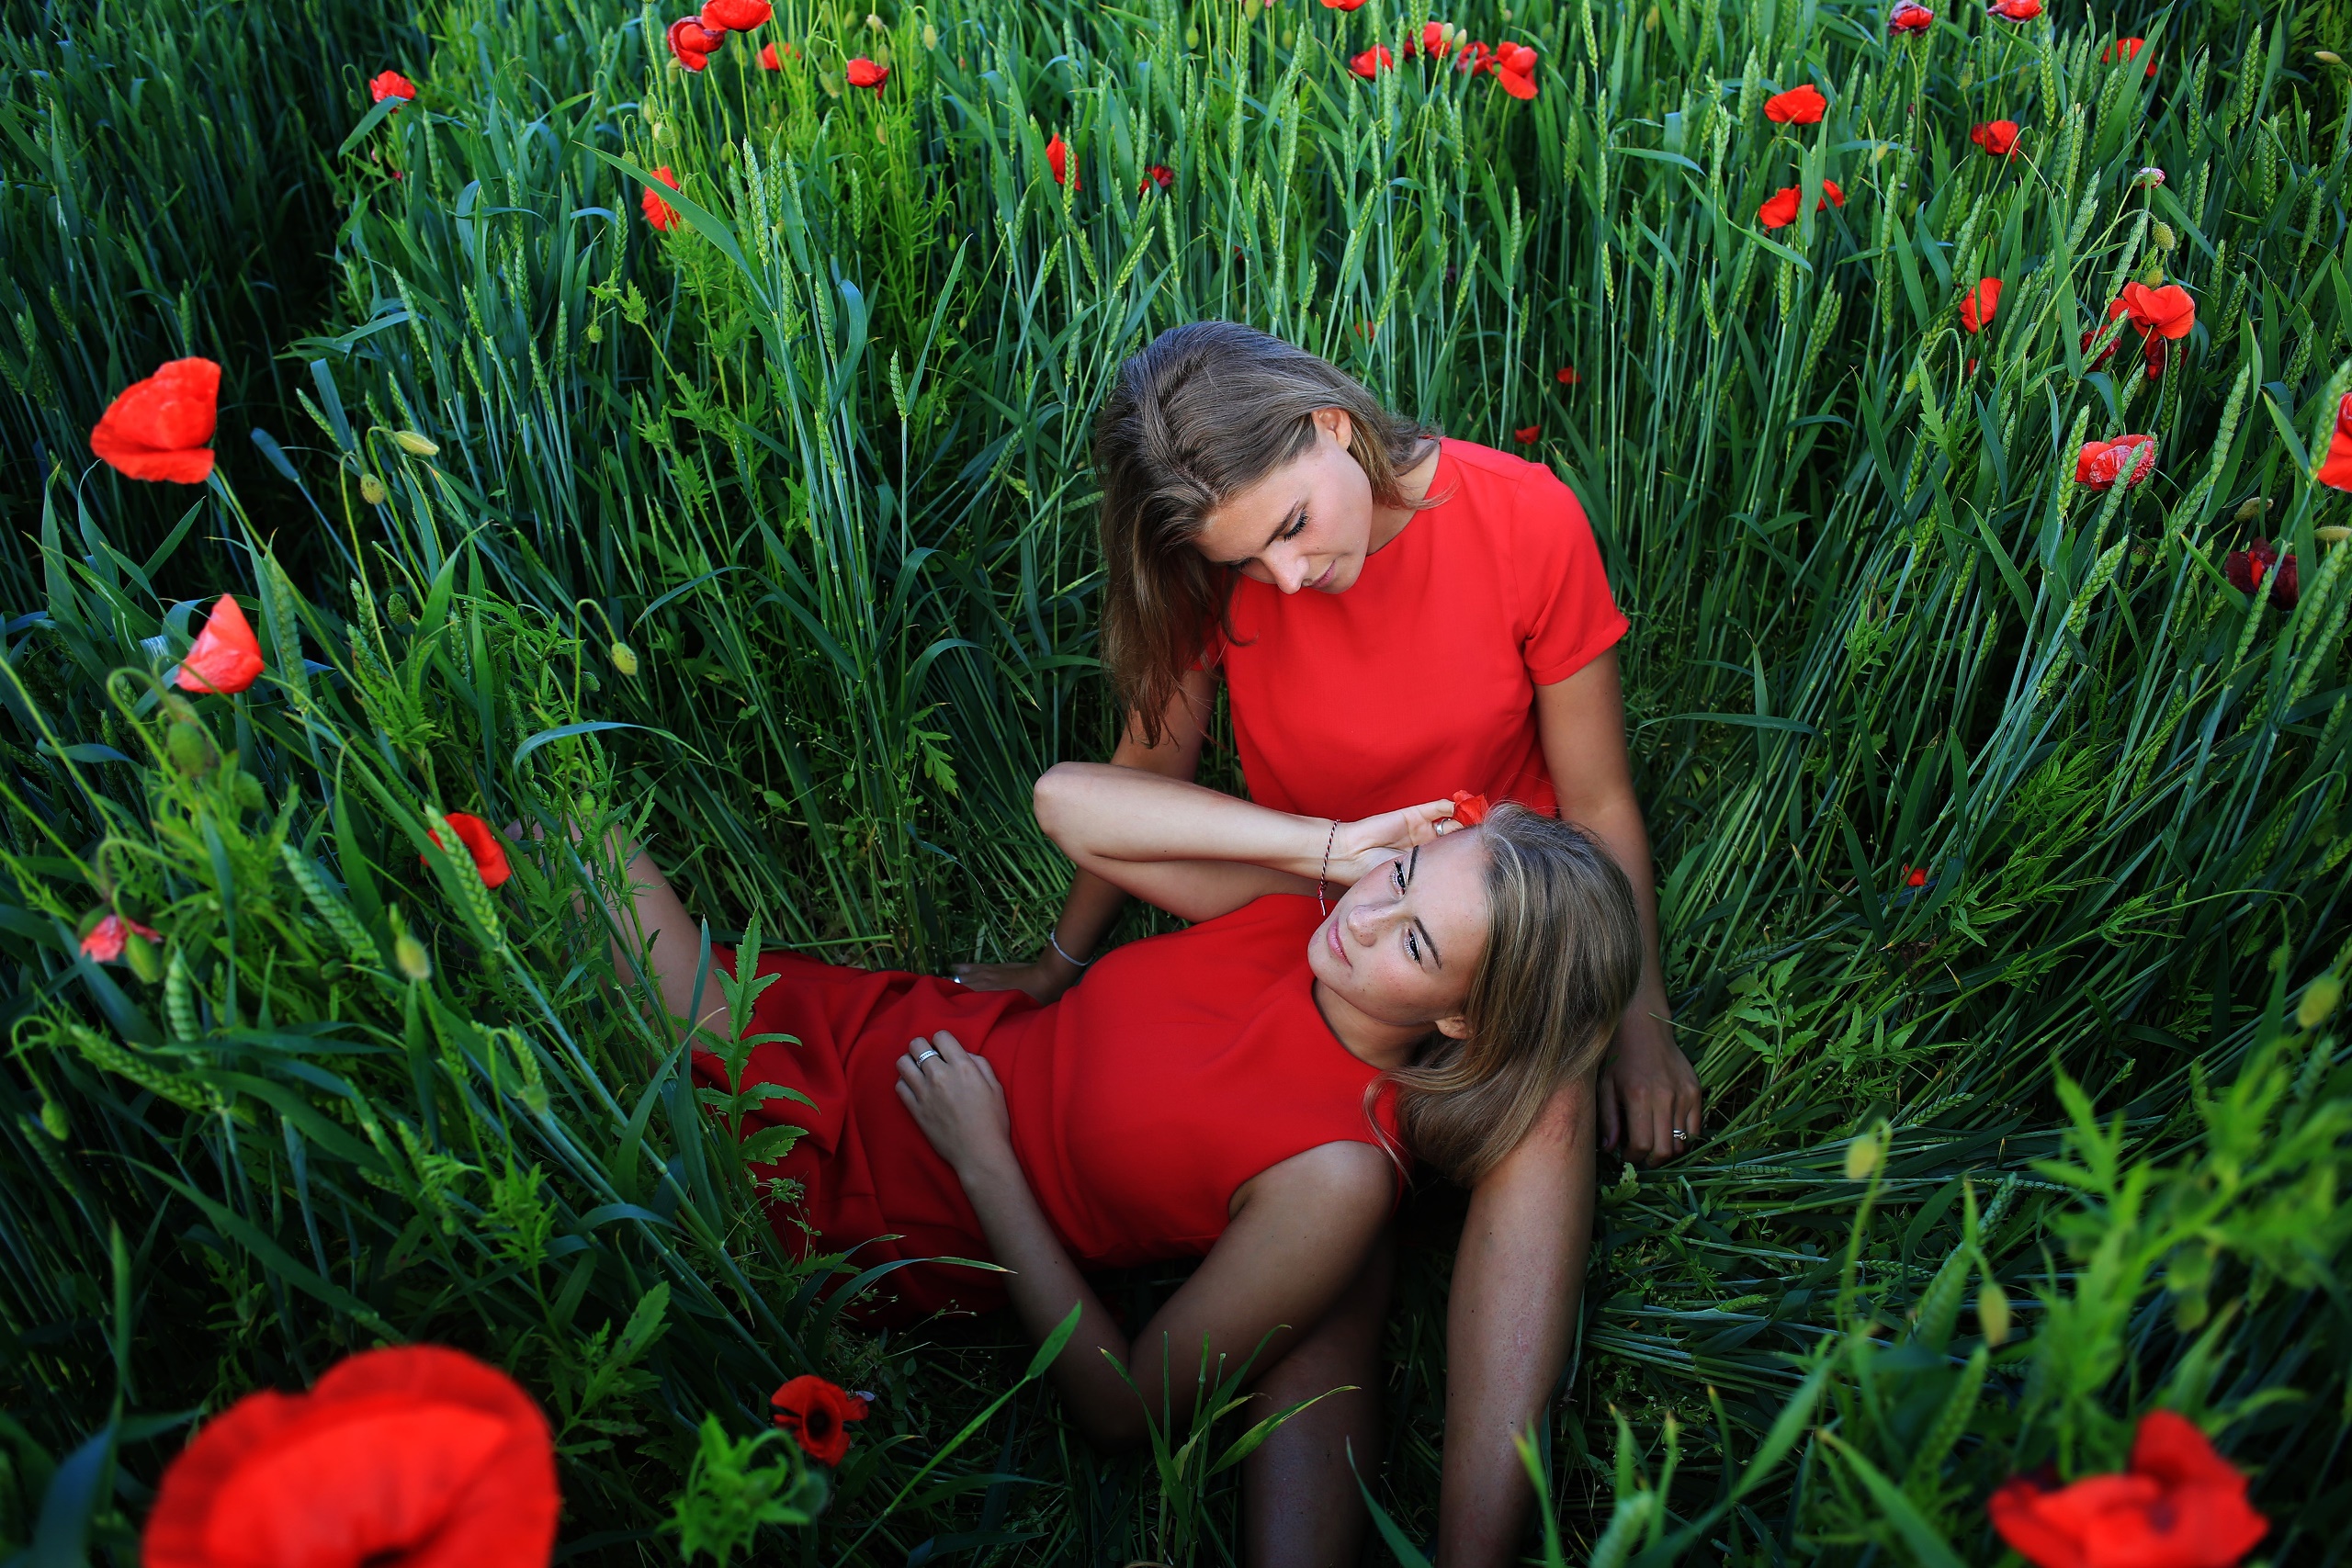 People 2560x1707 two women flowers plants women model red dress women outdoors red flowers